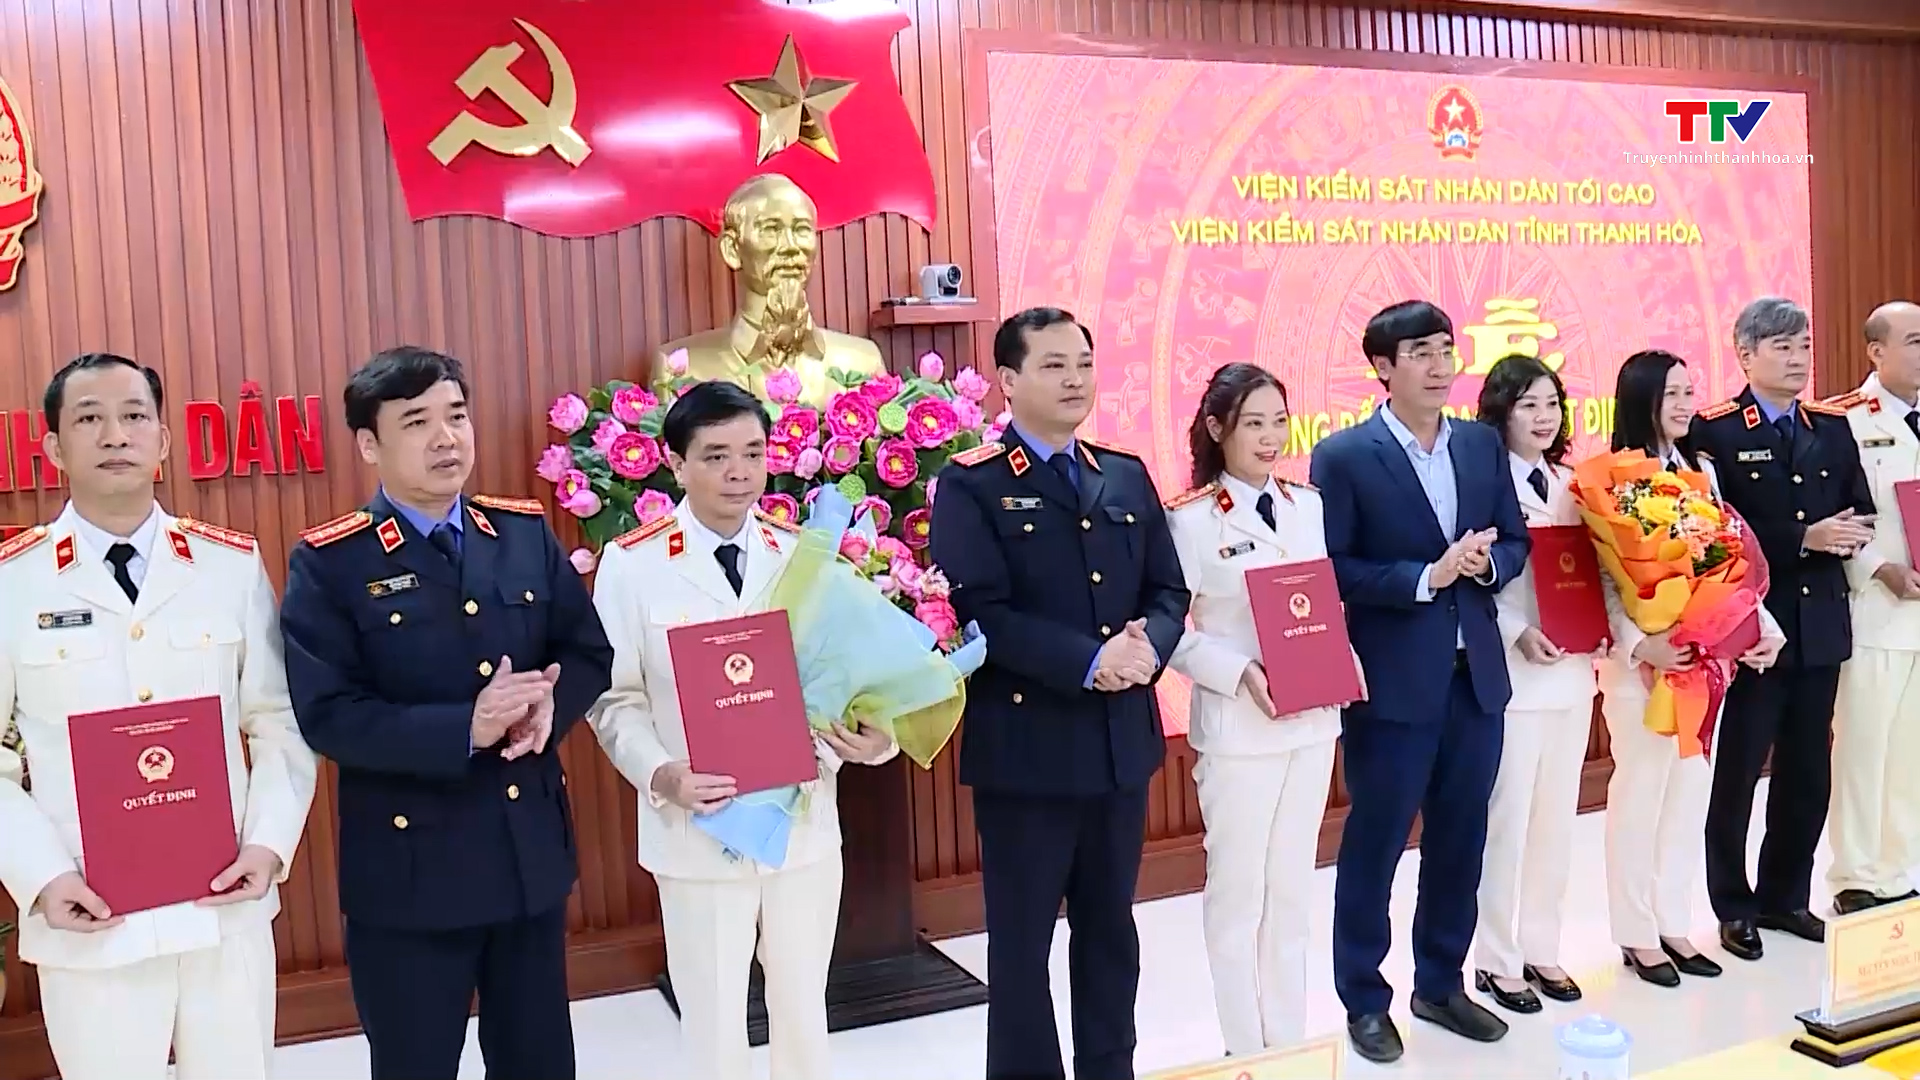 Viện Kiểm sát nhân dân tỉnh Thanh Hoá công bố và trao các quyết định về công tác cán bộ- Ảnh 2.